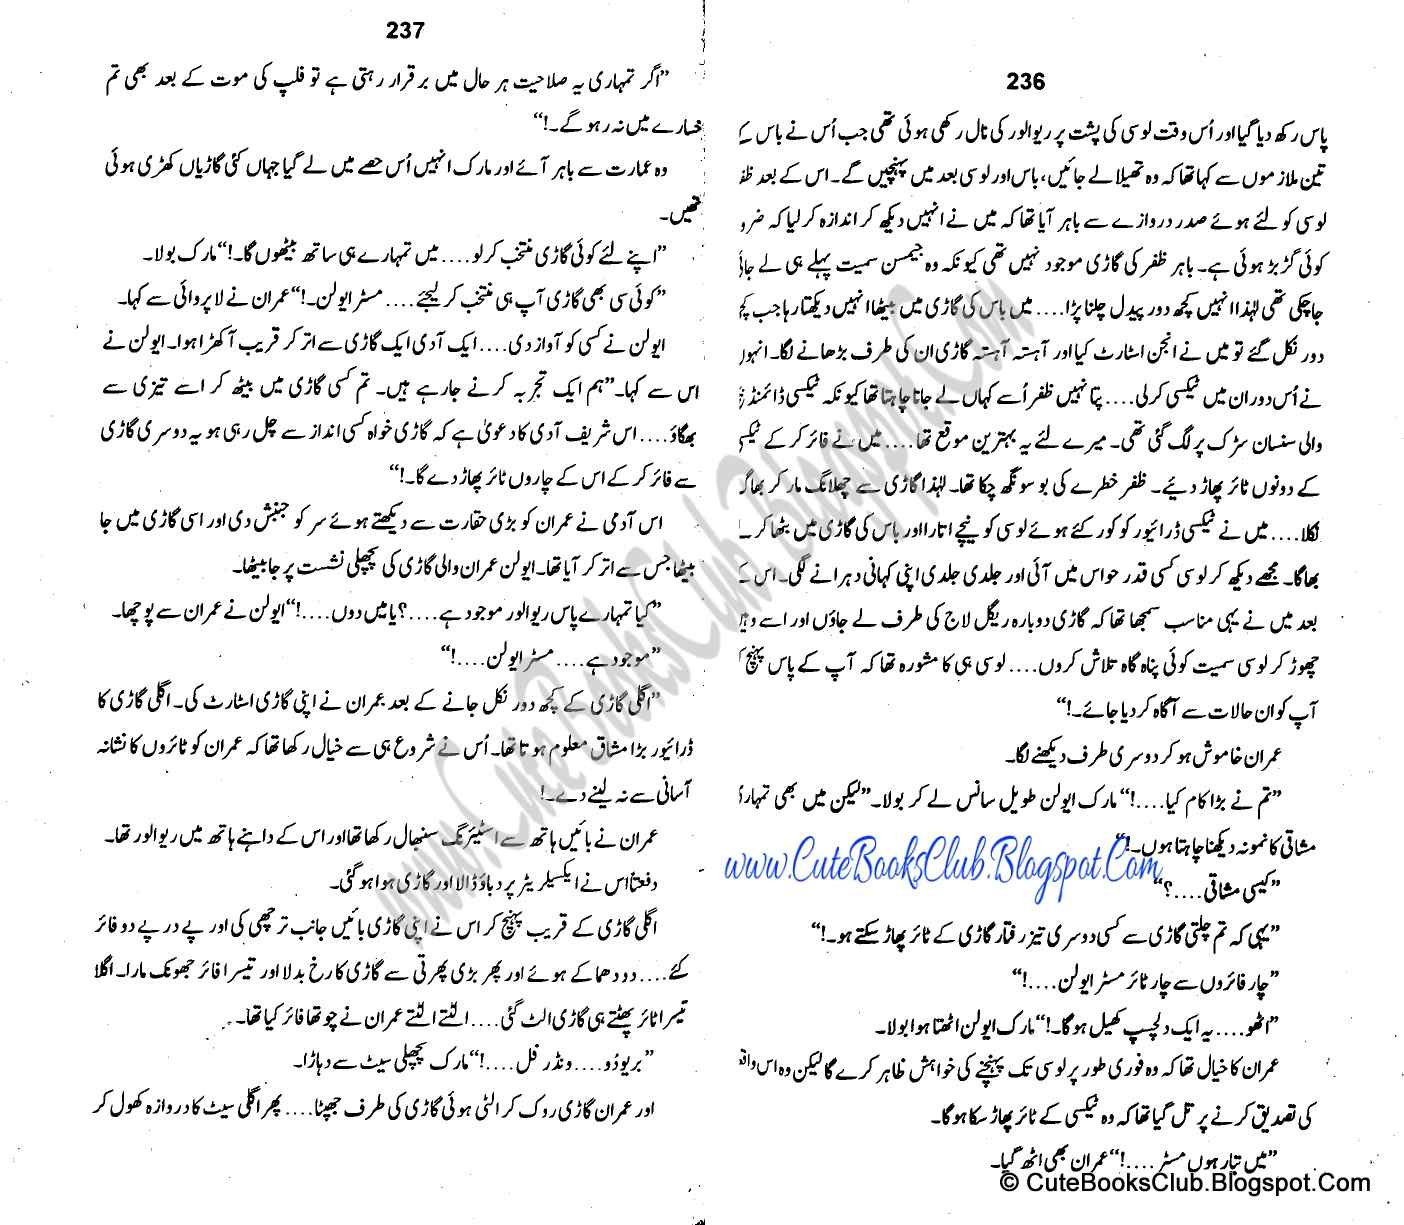 062-Dast-E-Qaza, Imran Series By Ibne Safi (Urdu Novel)